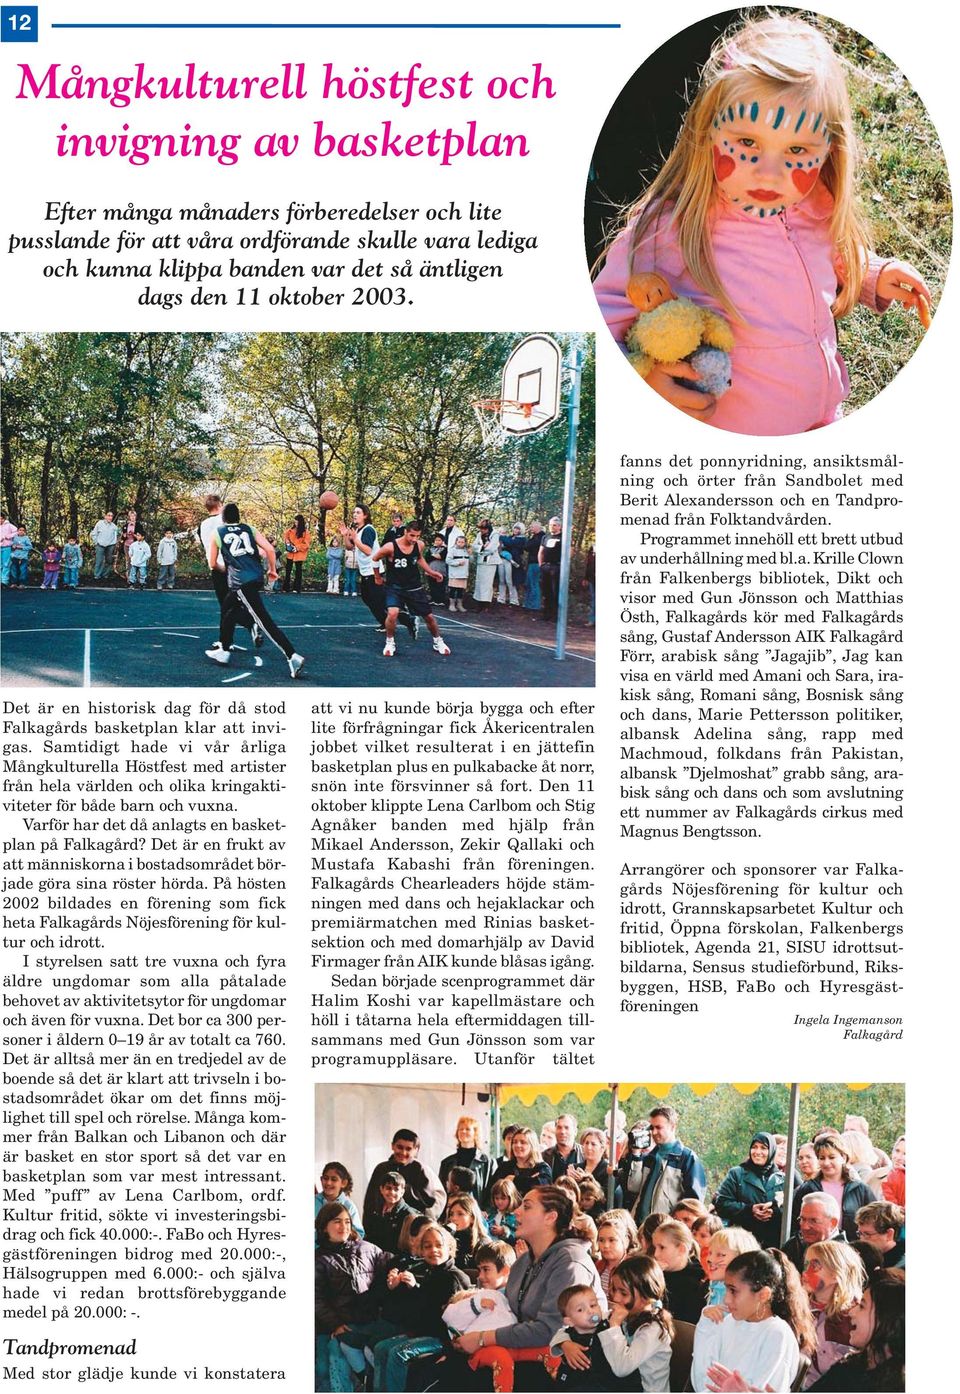 Samtidigt hade vi vår årliga Mångkulturella Höstfest med artister från hela världen och olika kringaktiviteter för både barn och vuxna. Varför har det då anlagts en basketplan på Falkagård?